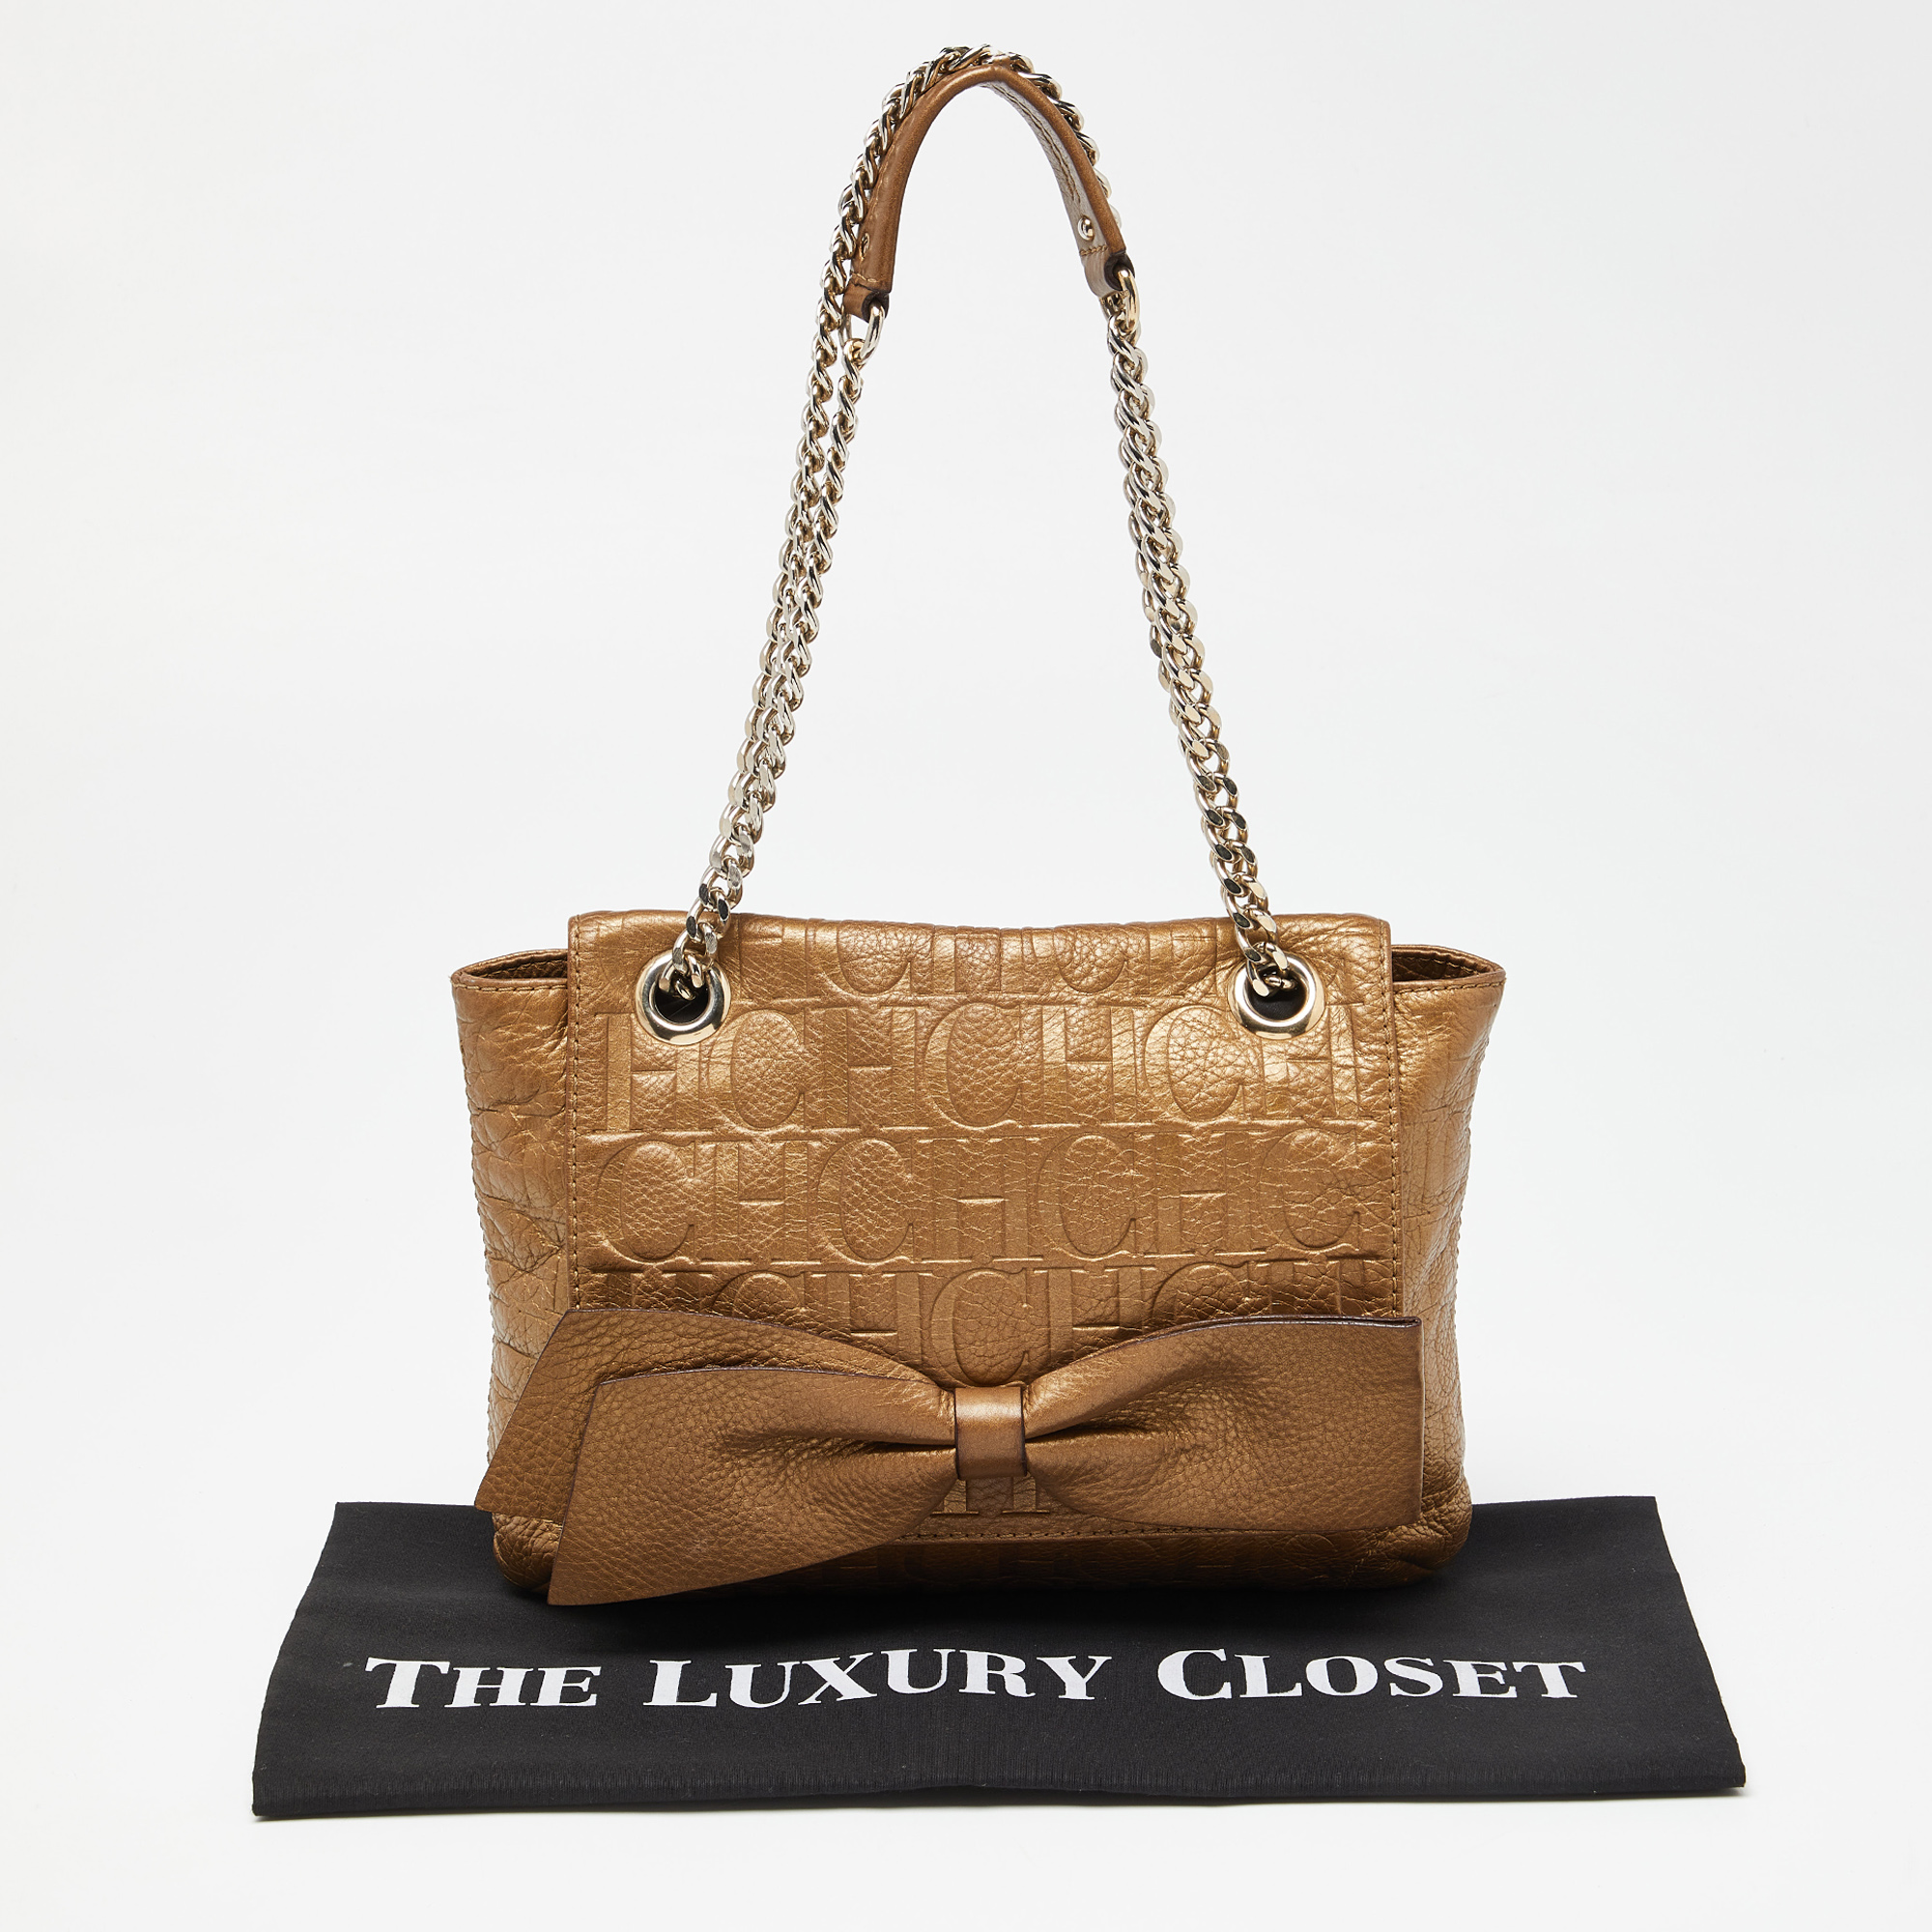 CH Carolina Herrera Gold Monogram Leather Audrey Shoulder Bag